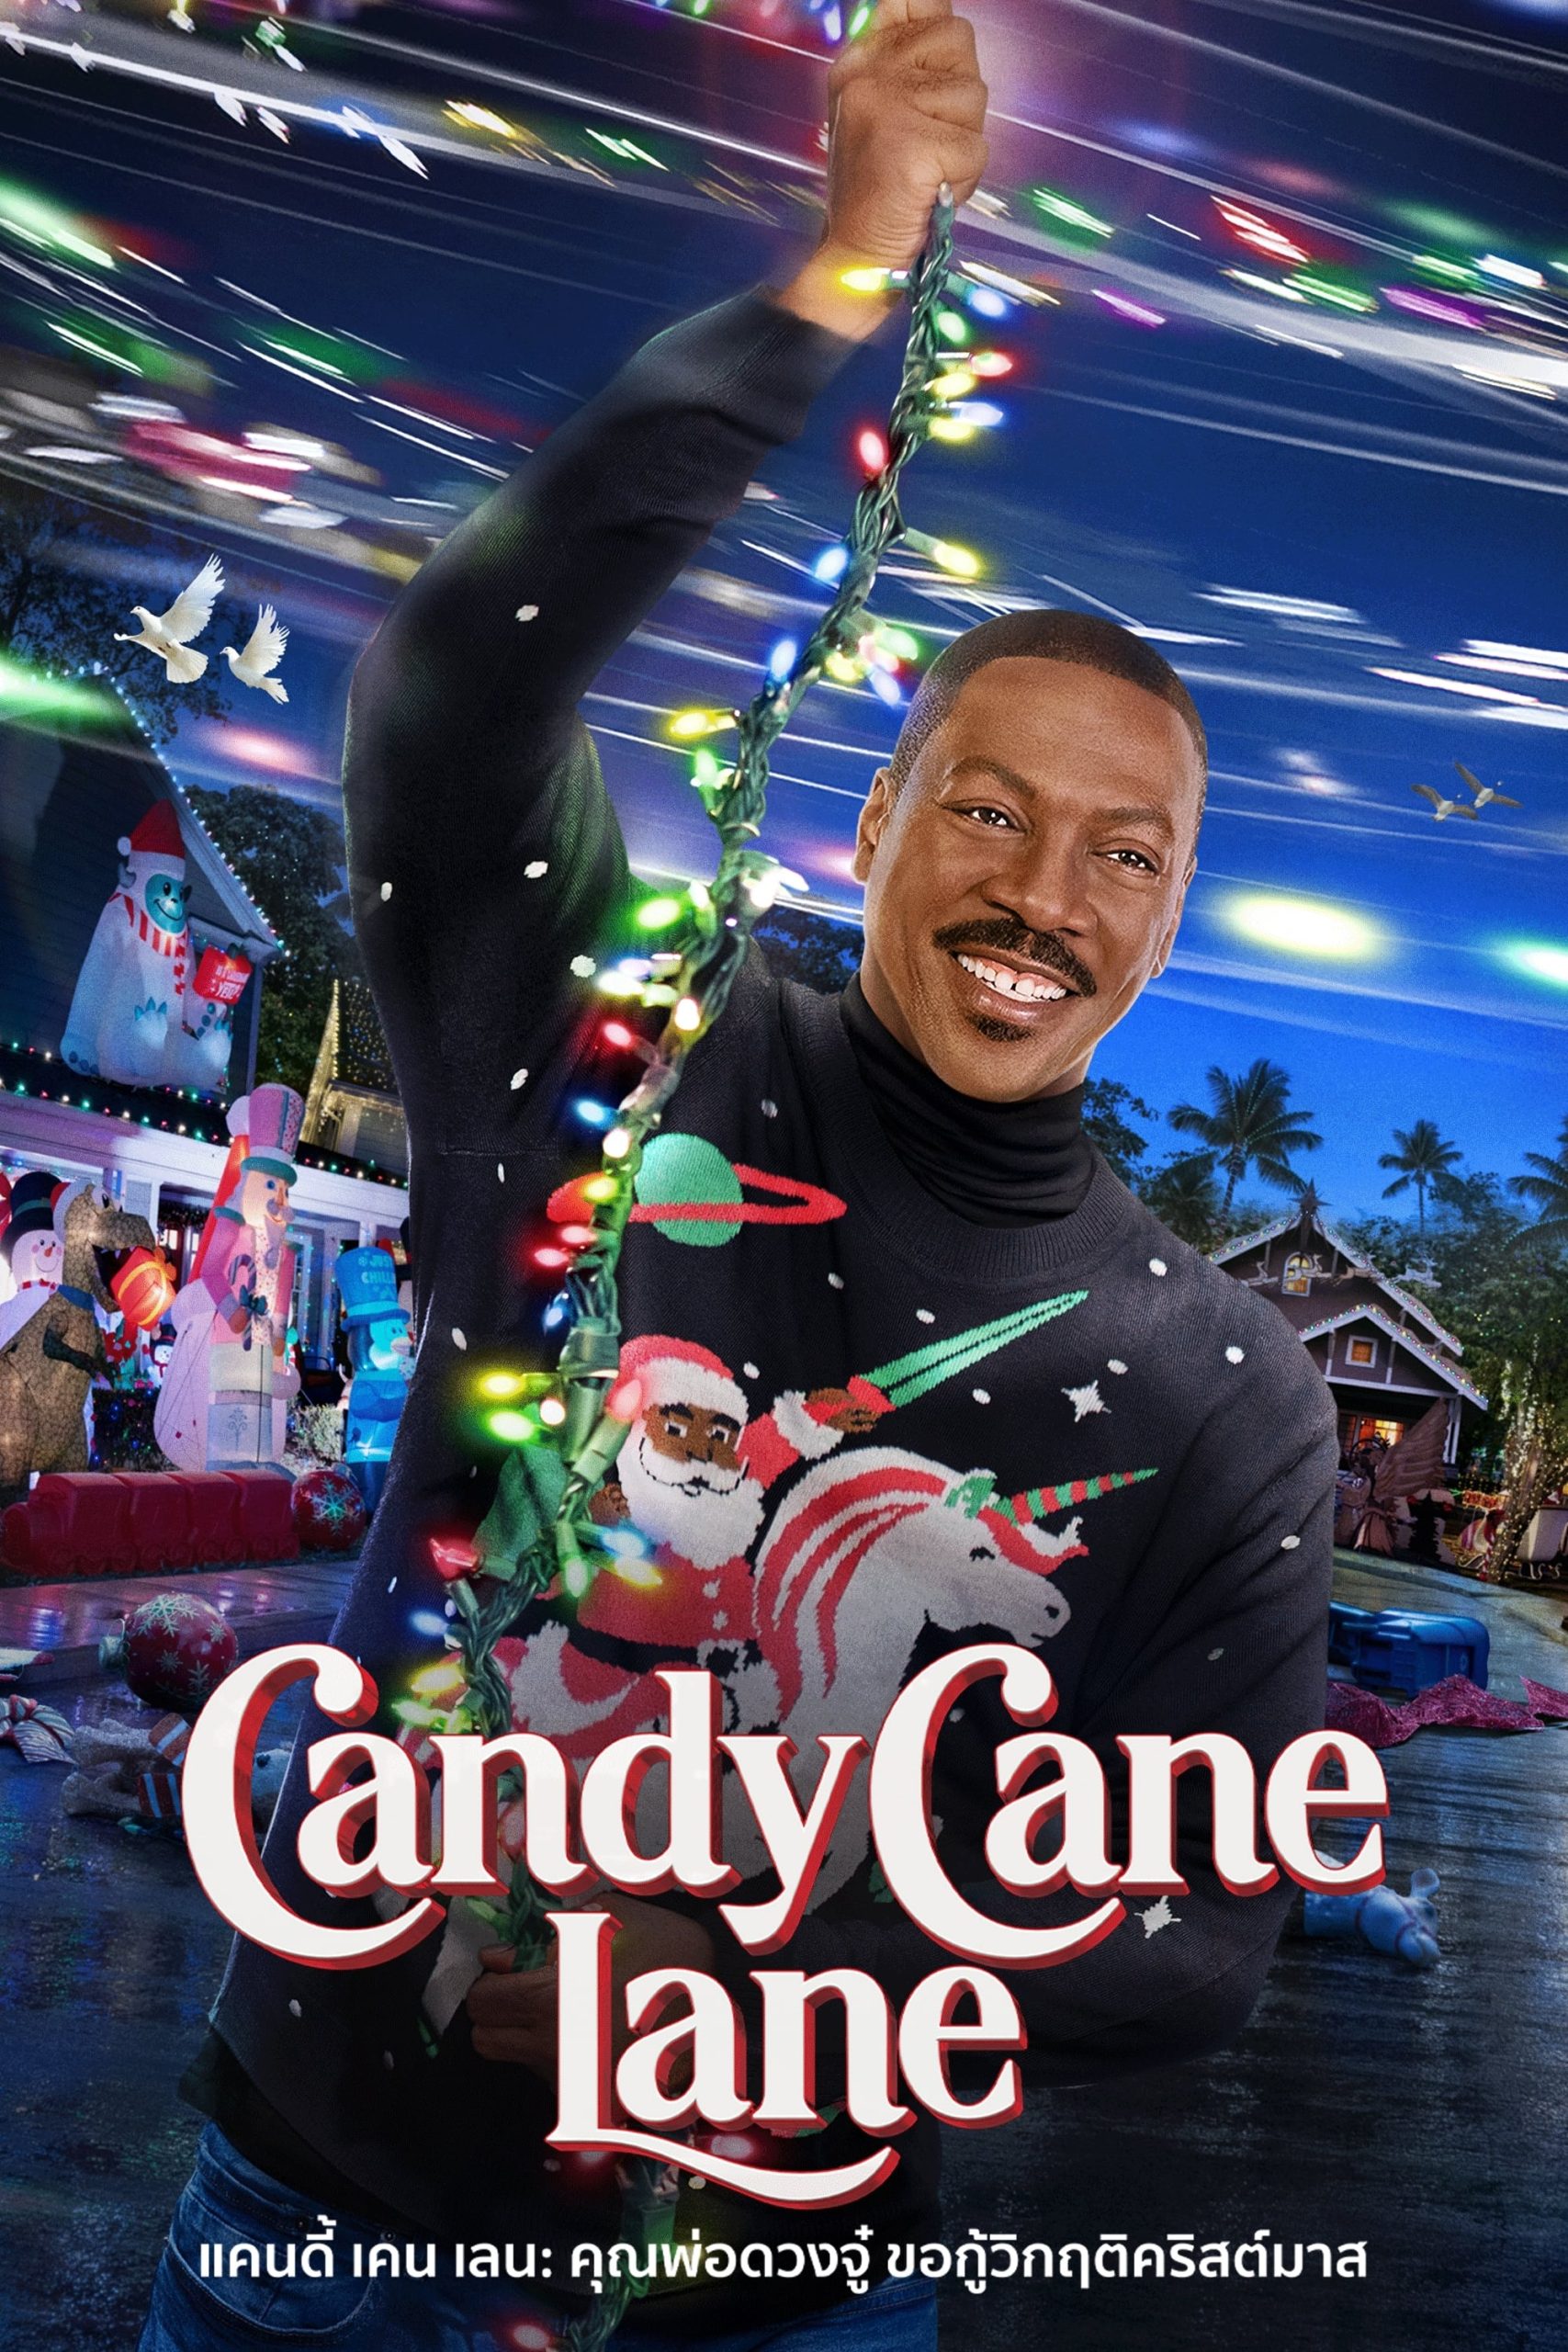 ดูหนังออนไลน์ฟรี Candy Cane Lane แคนดี้ เคน เลน คุณพ่อดวงจู๋ ขอกู้วิกฤติคริสต์มาส 2023 พากย์ไทย